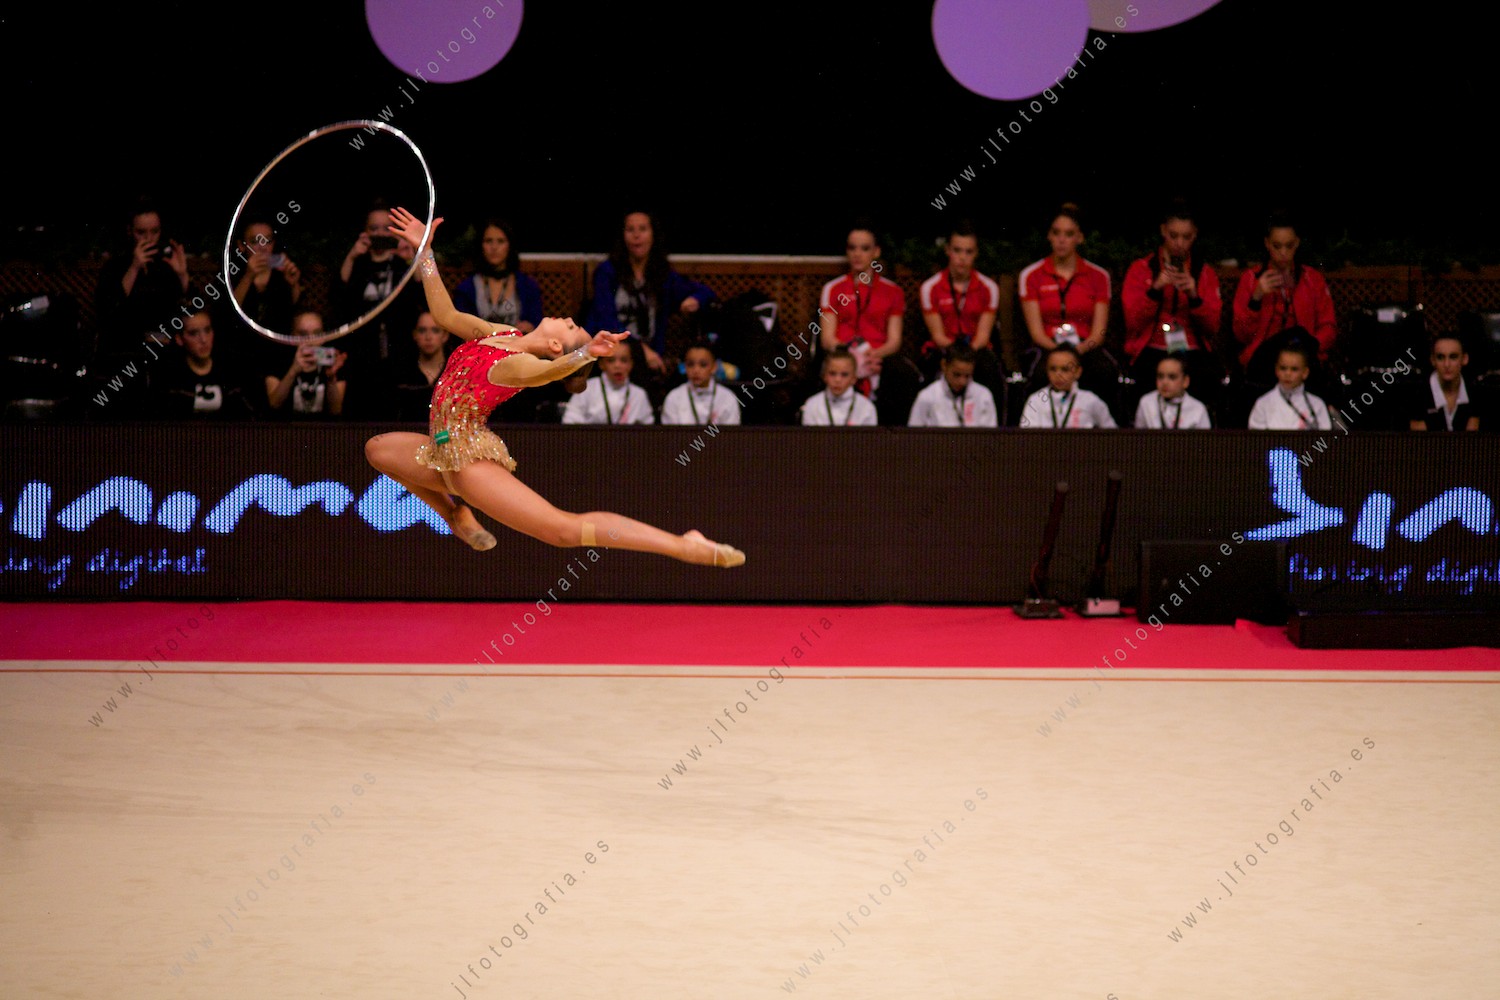 salto impresionante de una gimnasta en la gala del Euskalgym 10 de 2015 celebrado en el Fernando Buesa Arena de Vitoria